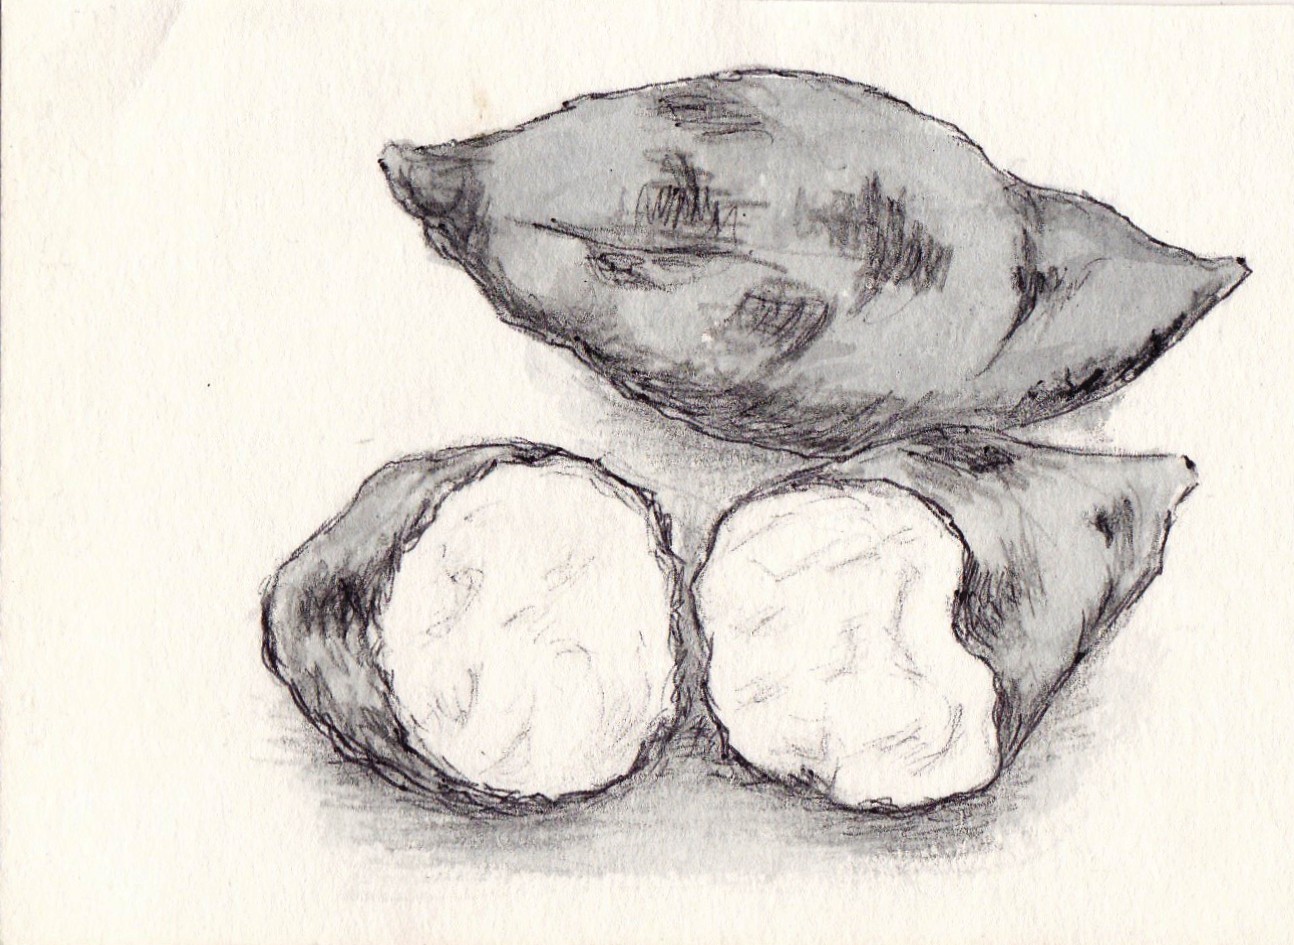 Beniaka popular as baked potato. Illustration by Eiko Goto